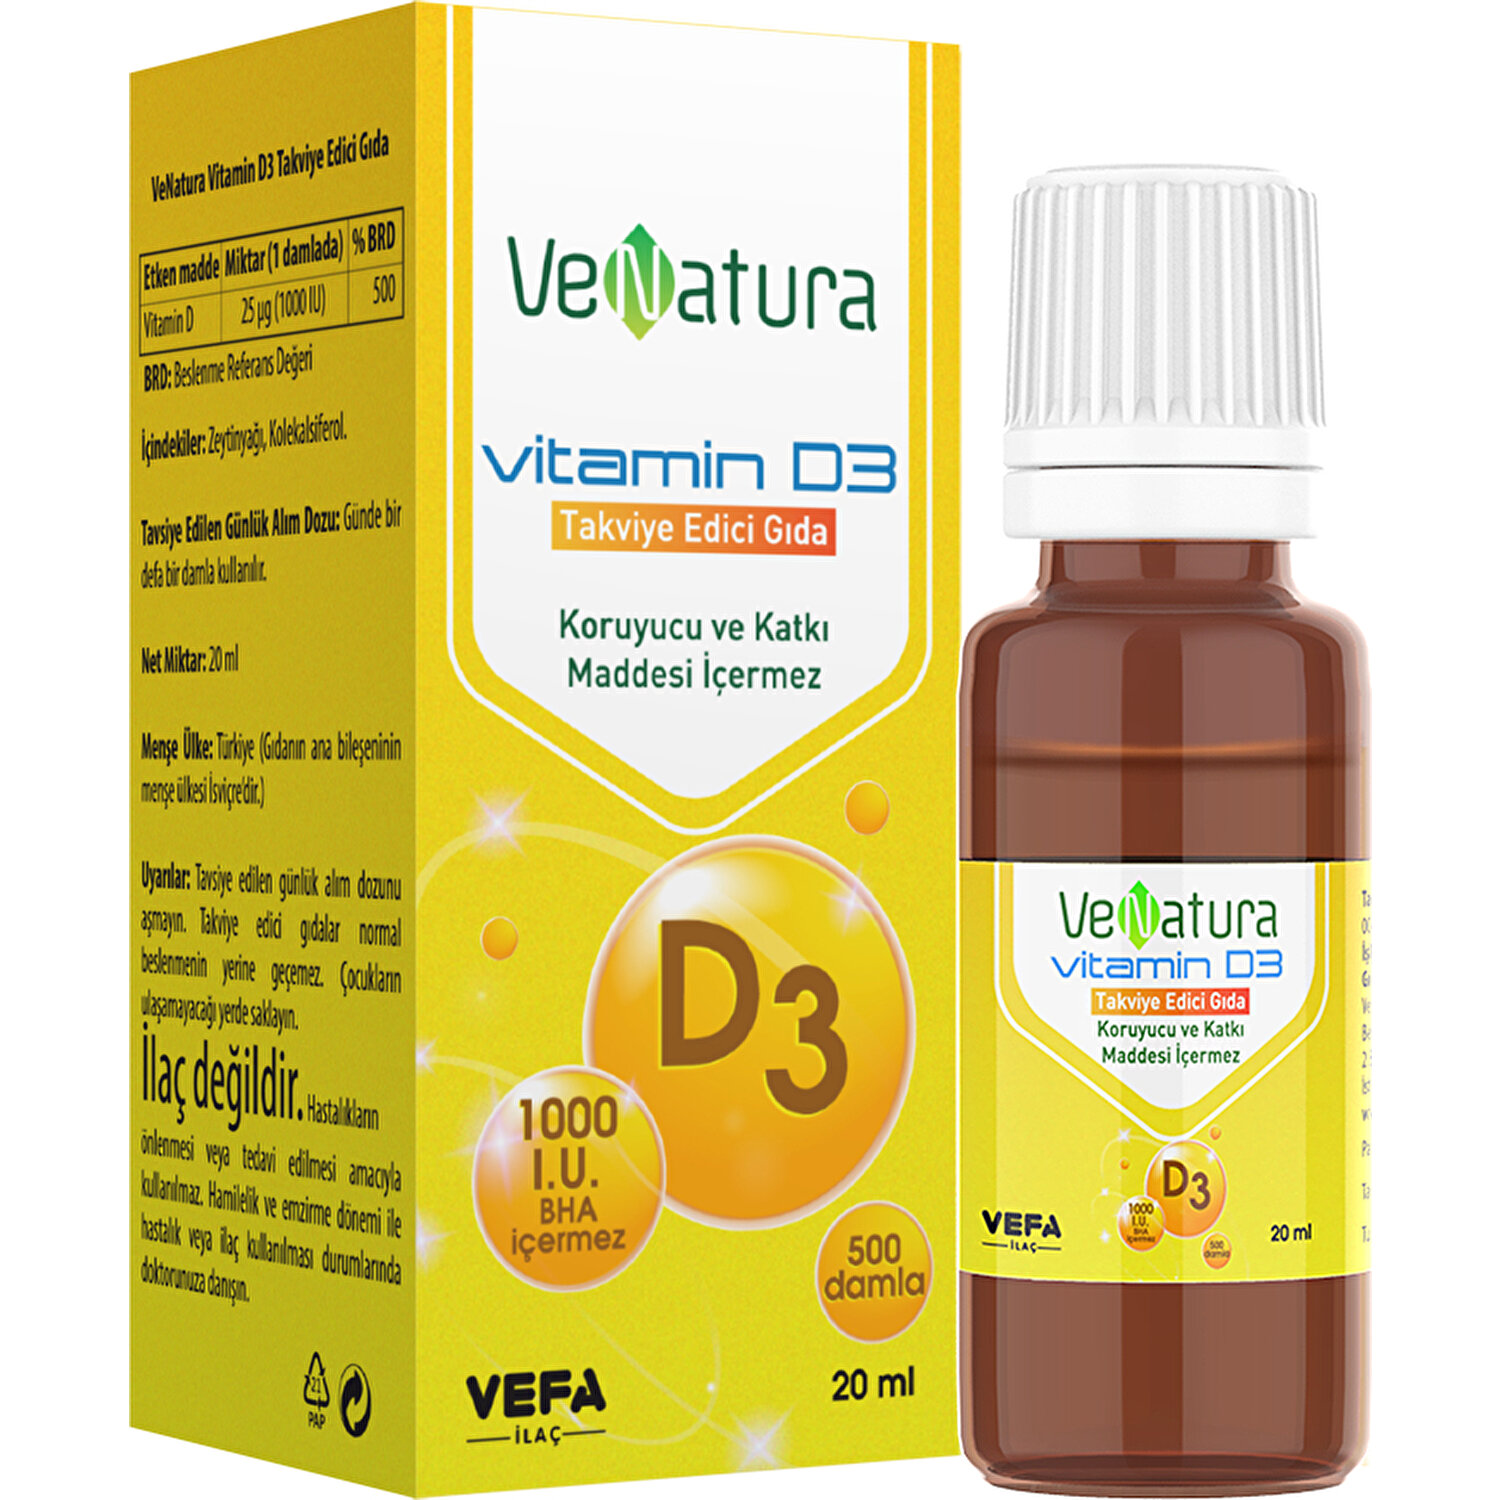 D Vitamini Damla Coledan D3 Oral Damla Nasil Kullanilir Kizlarsoruyor